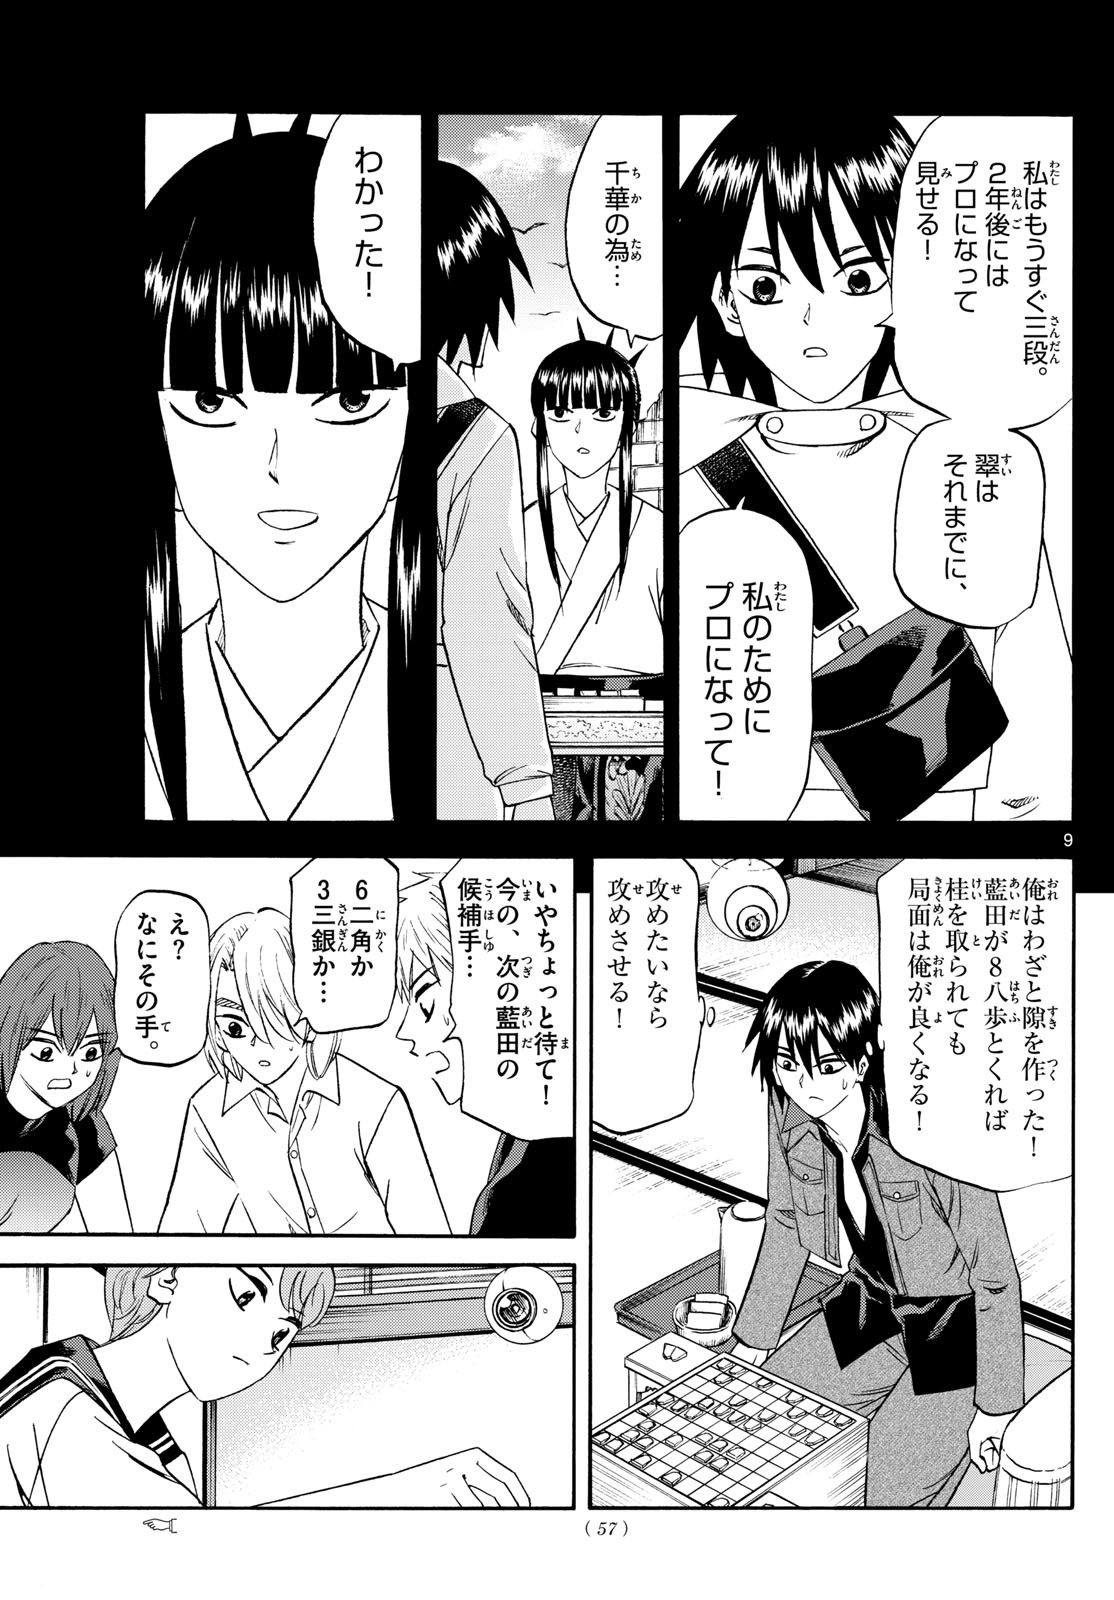 Ryu-to-Ichigo - Chapter 194 - Page 9